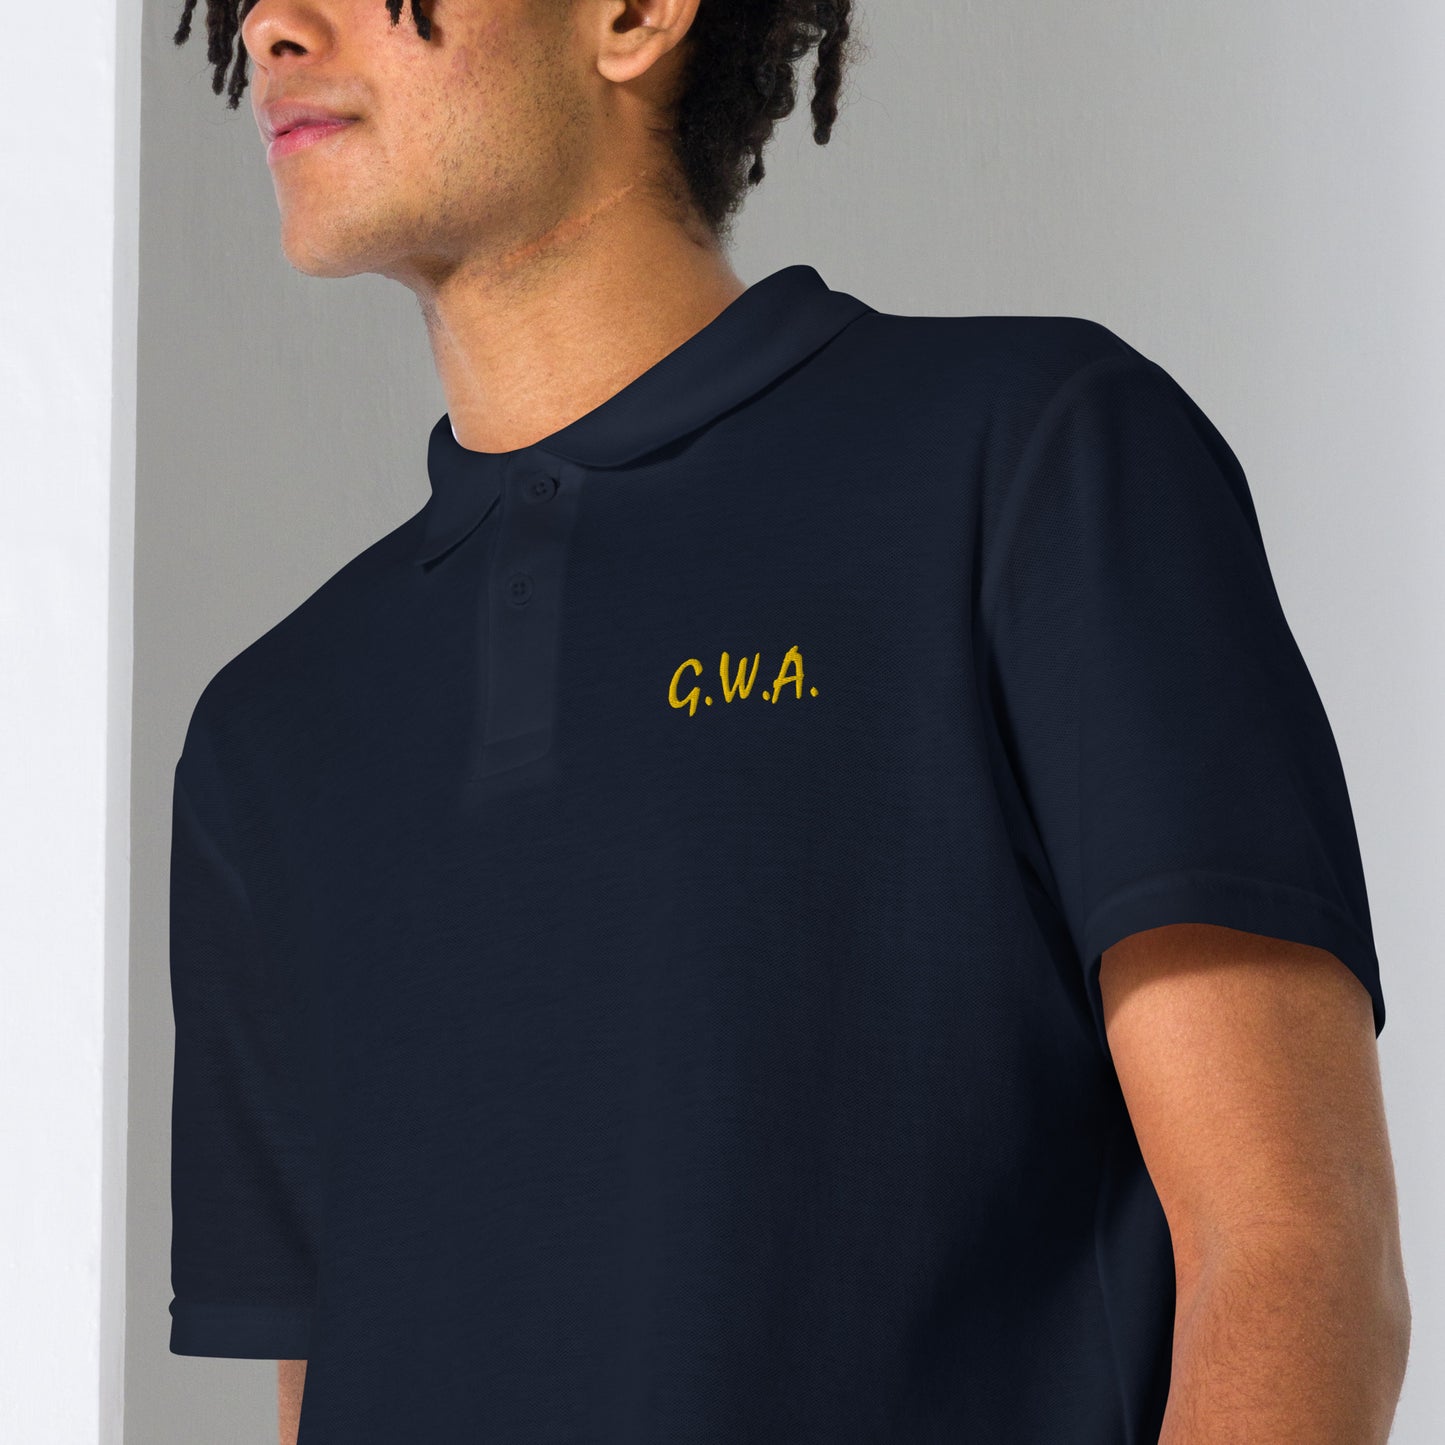 GWA 3 Unisex pique polo shirt